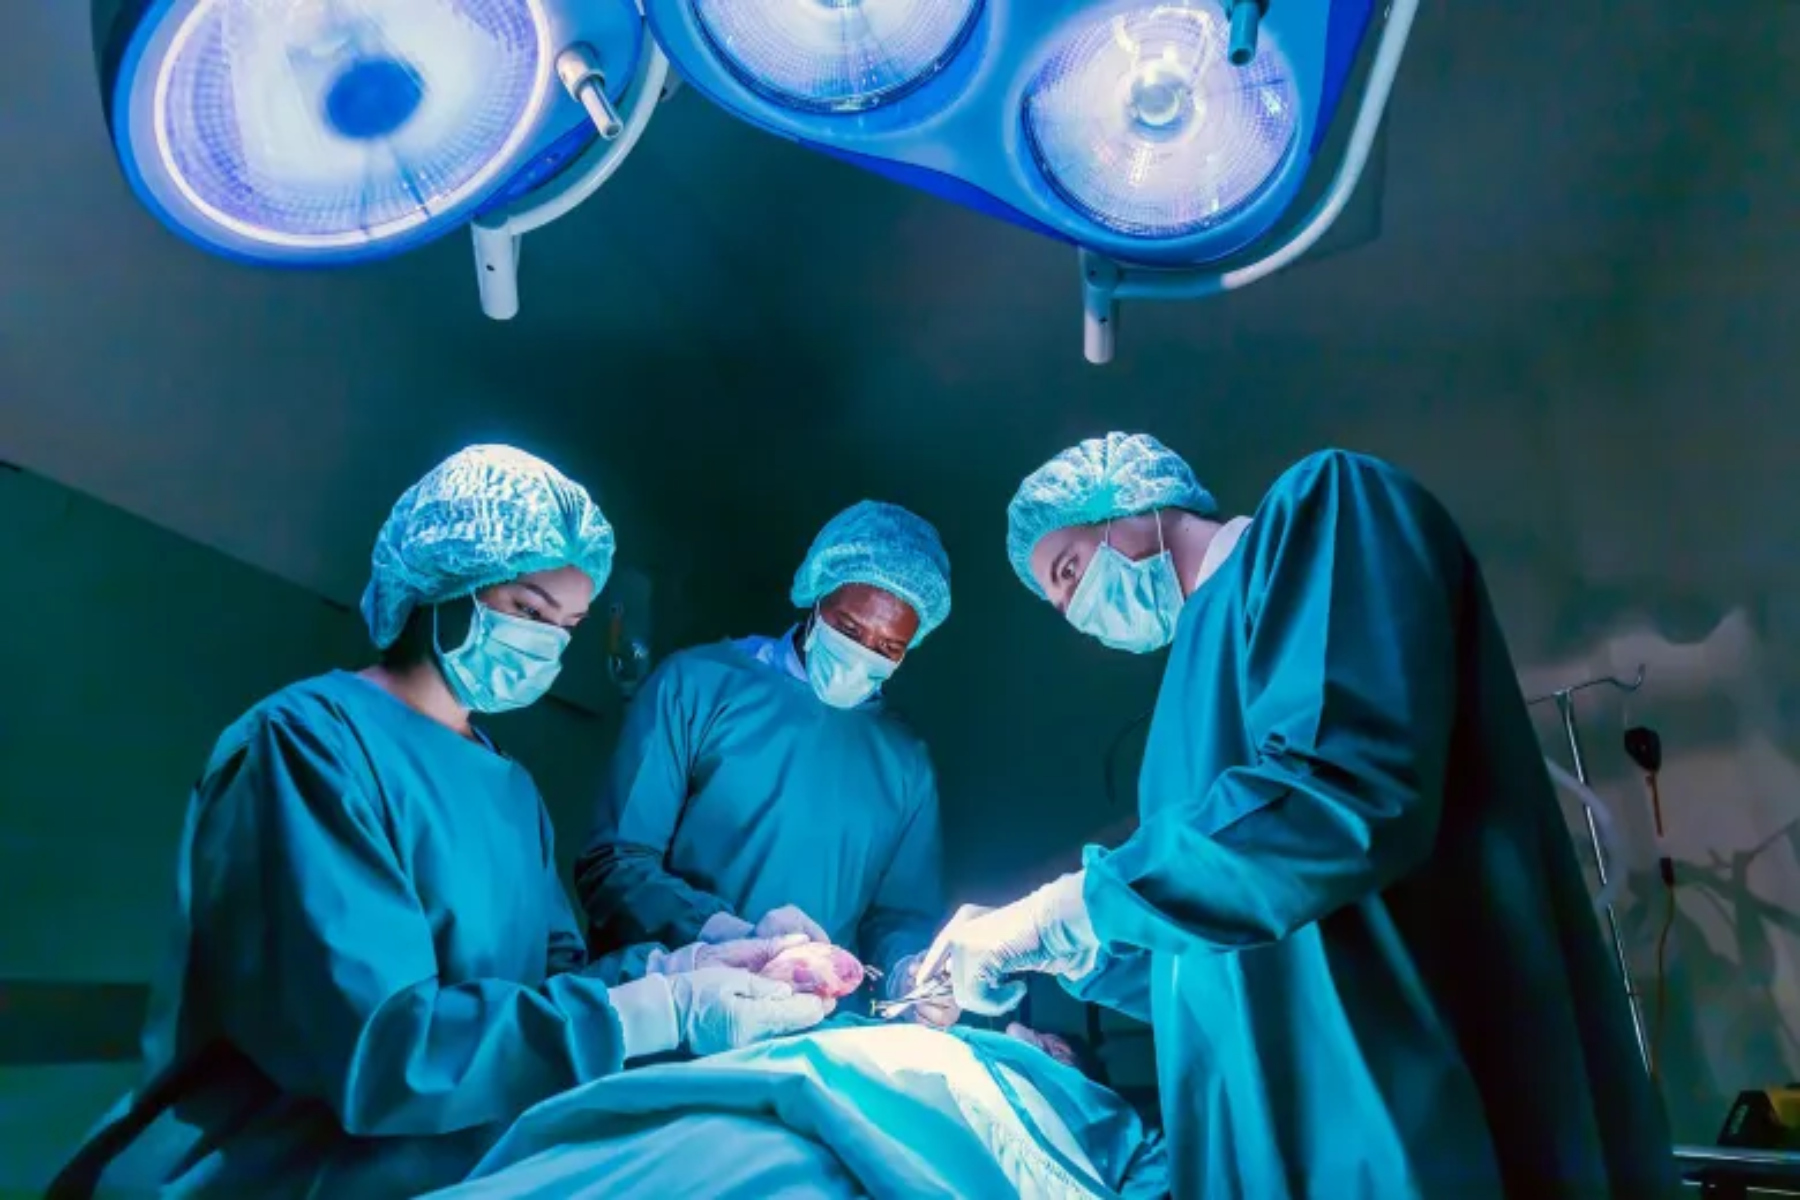 Μεταμόσχευση: Νέα προσέγγιση στις μεταμοσχεύσεις ενισχύει την προσφορά καρδιών δωρητών